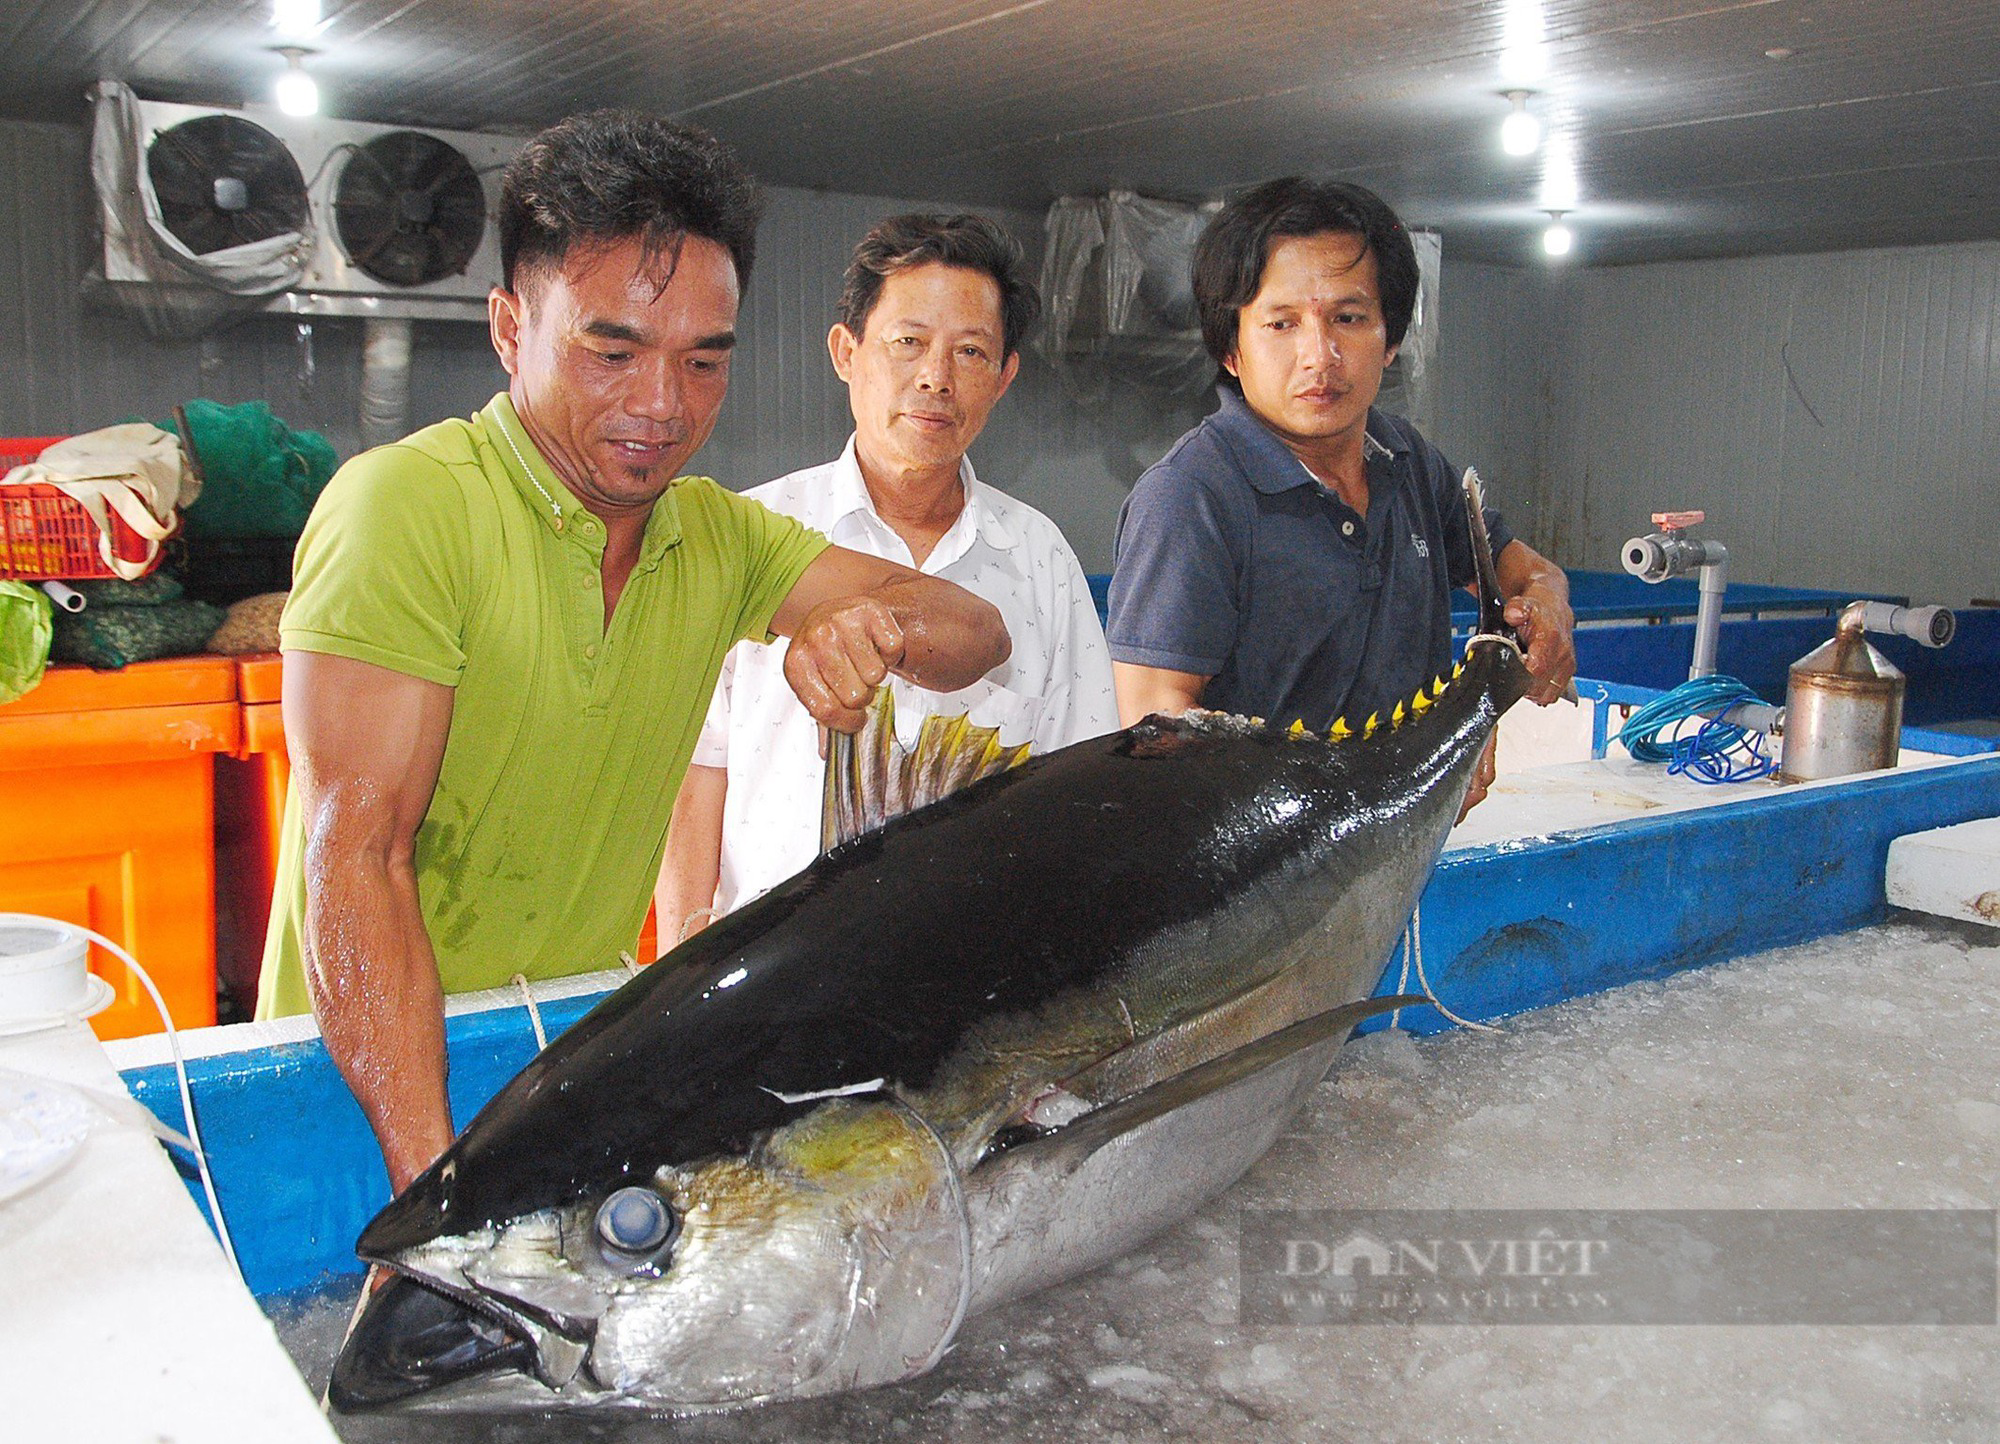 Ngư dân Bình Định bảo quản cá ngừ 'khủng' bằng cách nào, để giúp cá tươi rói, đảm bảo chất lượng? - Ảnh 6.